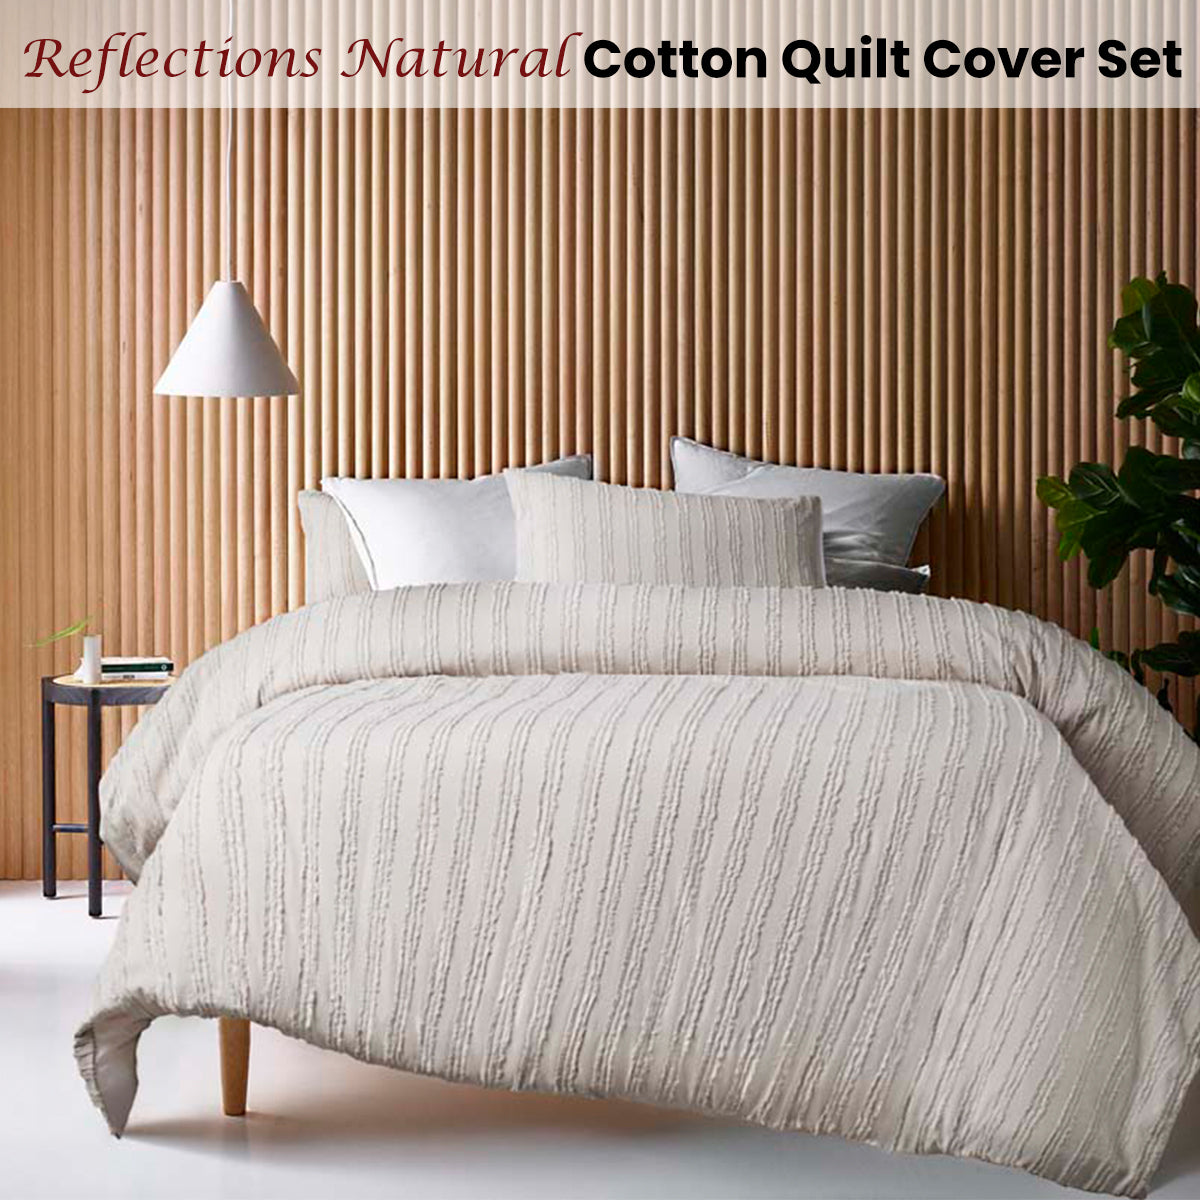 Queen Vintage Design Cotton Quilt Cover Set -  Natural